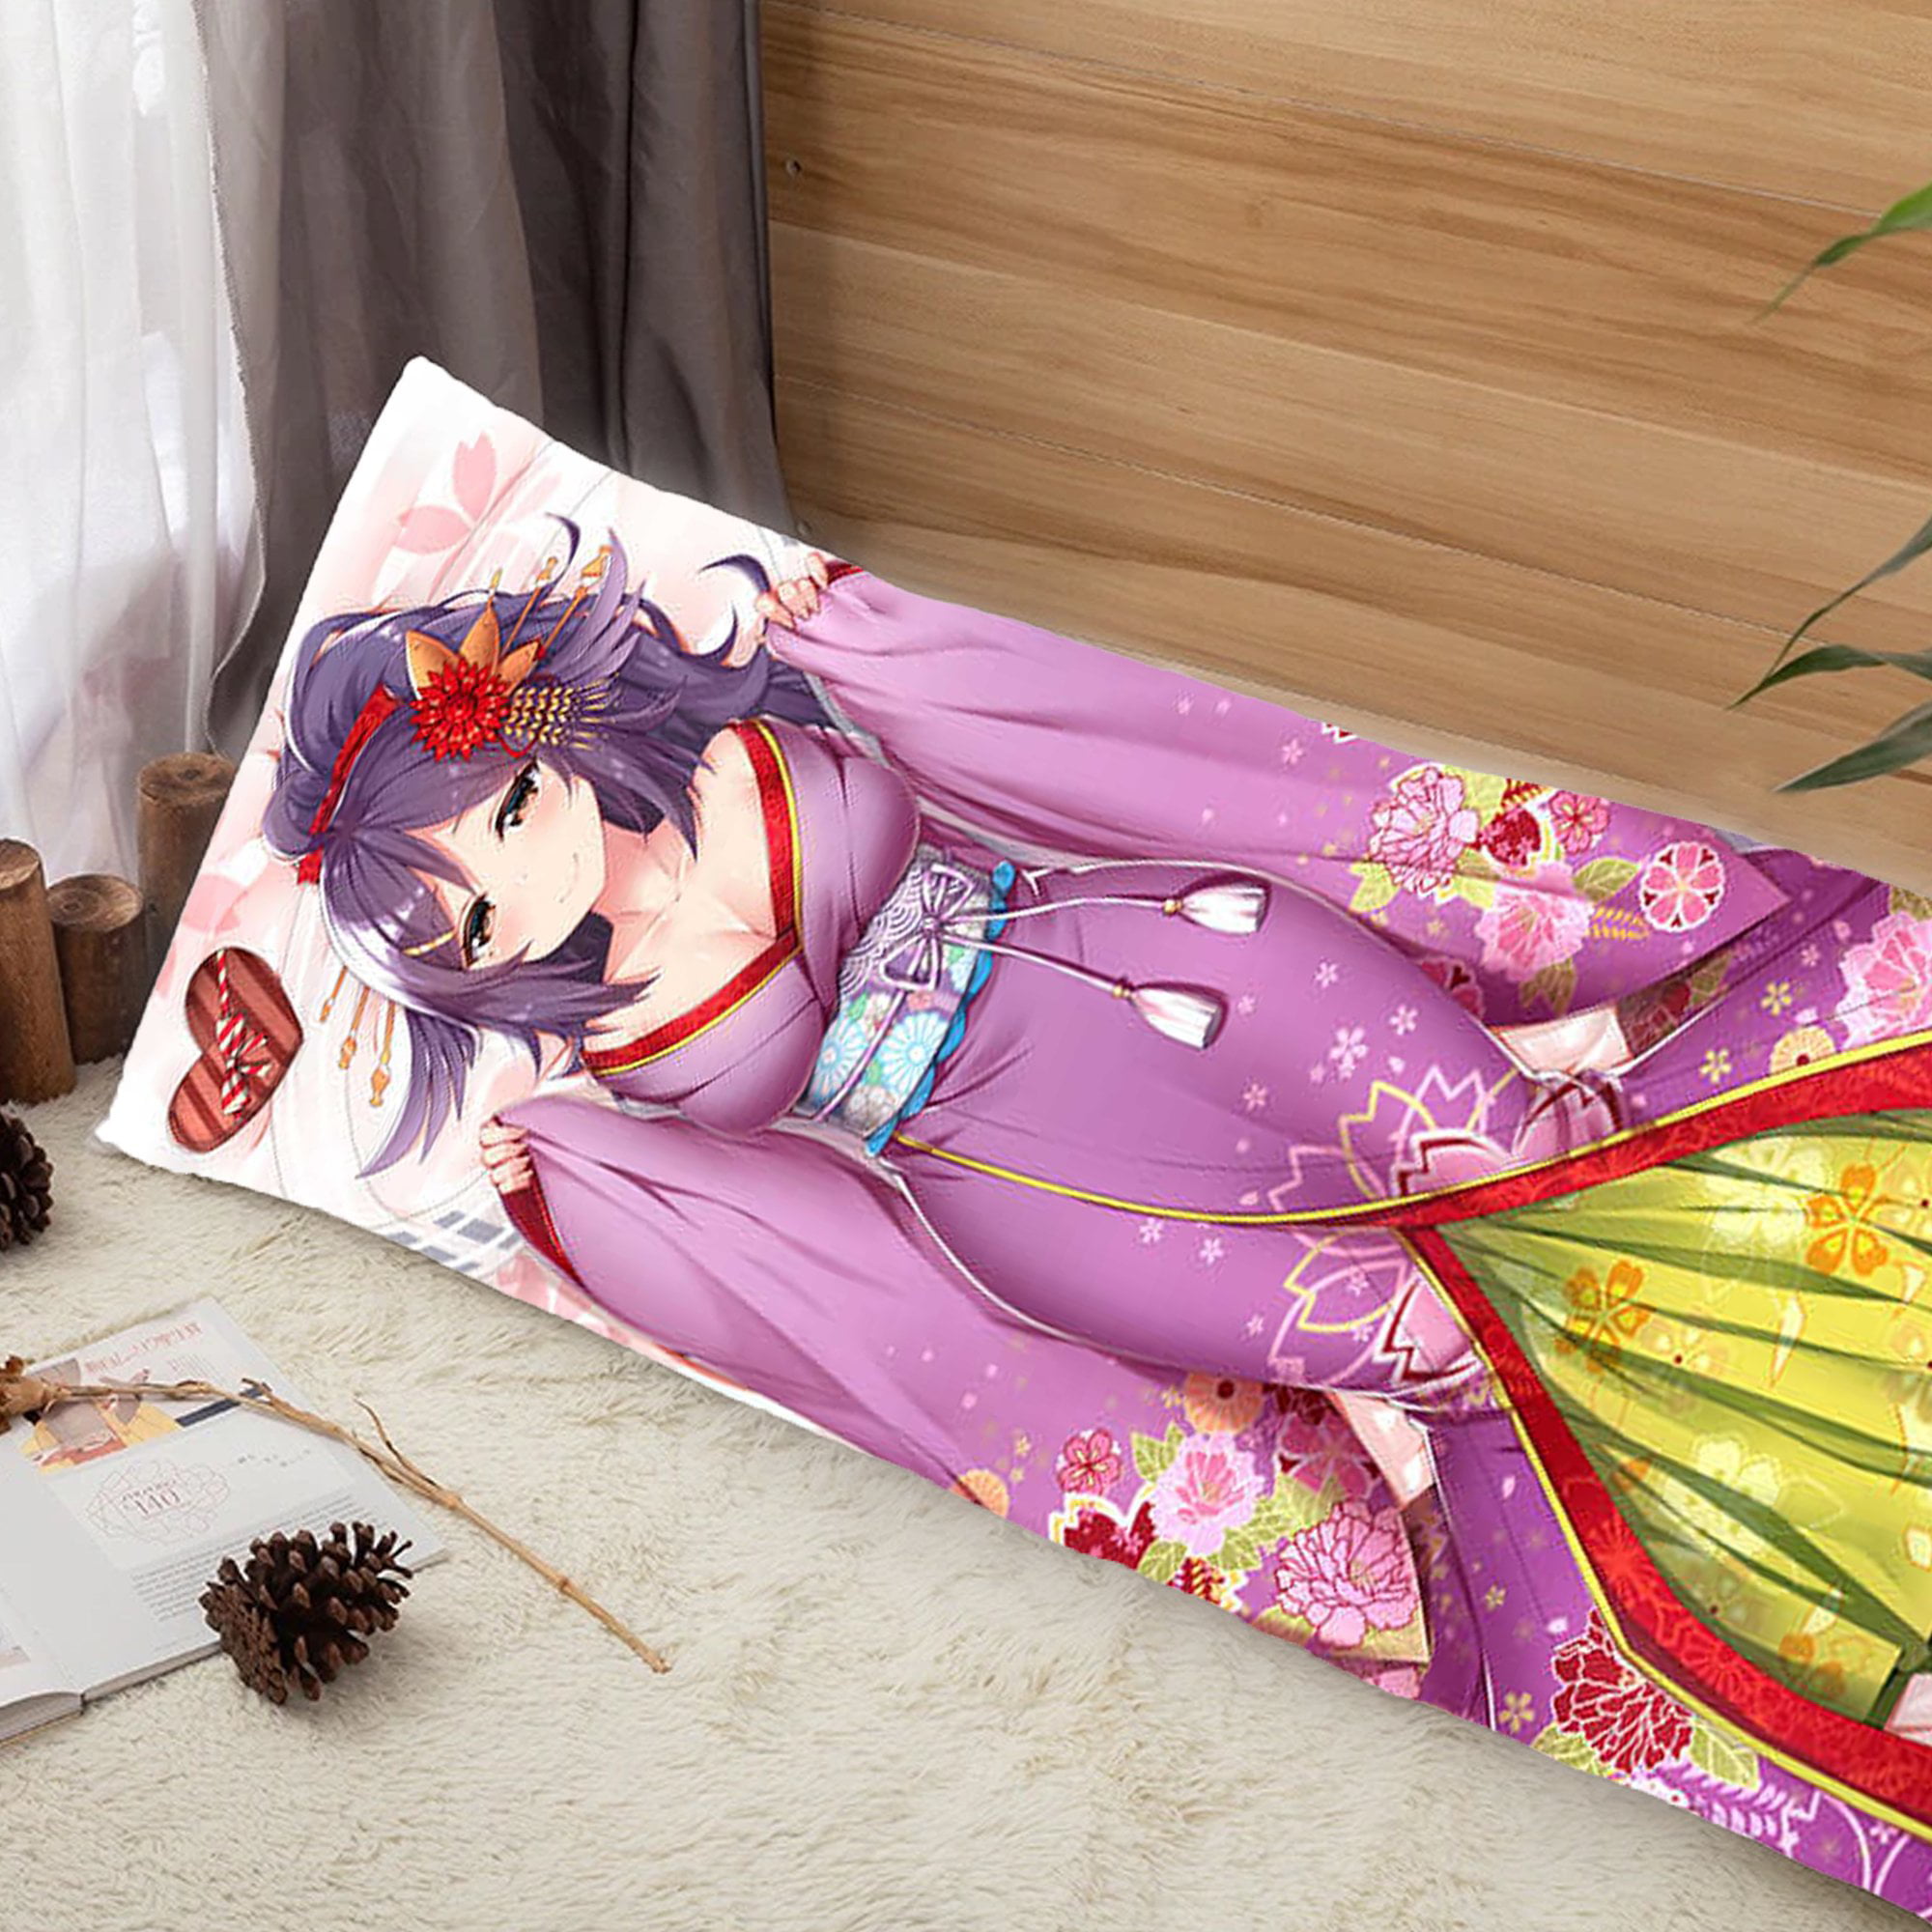 How to Draw Anime Clothing: Girl in Kimono/Yukata [No Timelapse] - YouTube